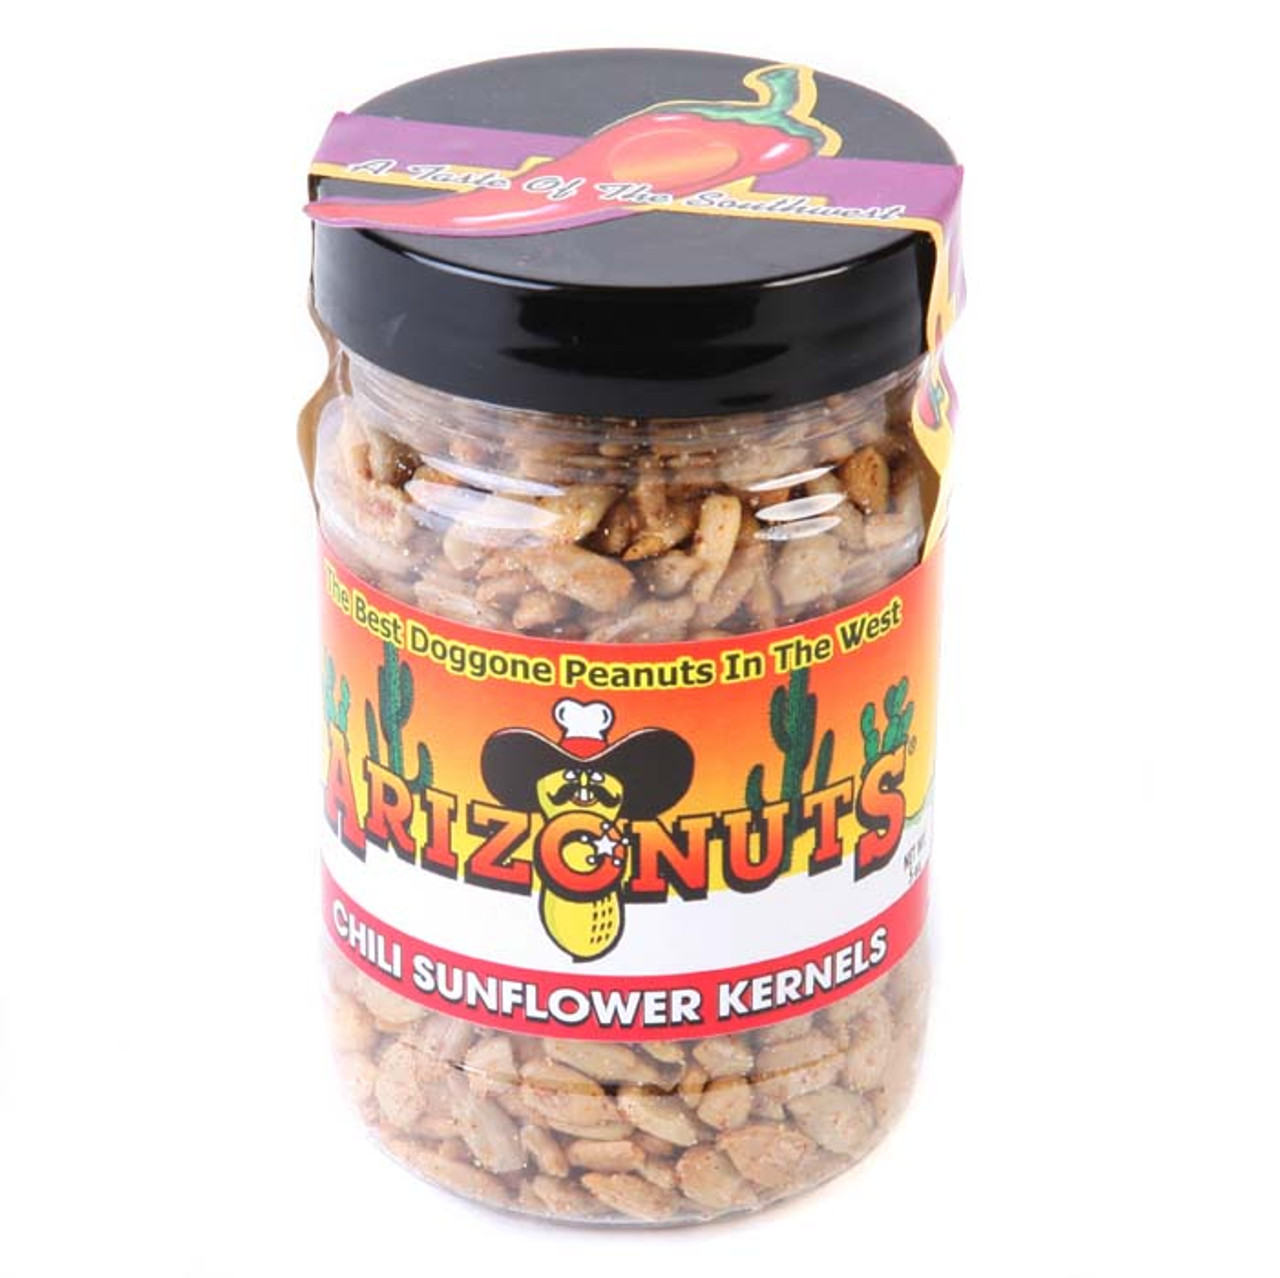 Chili Sunflower Kernels-Case of 12